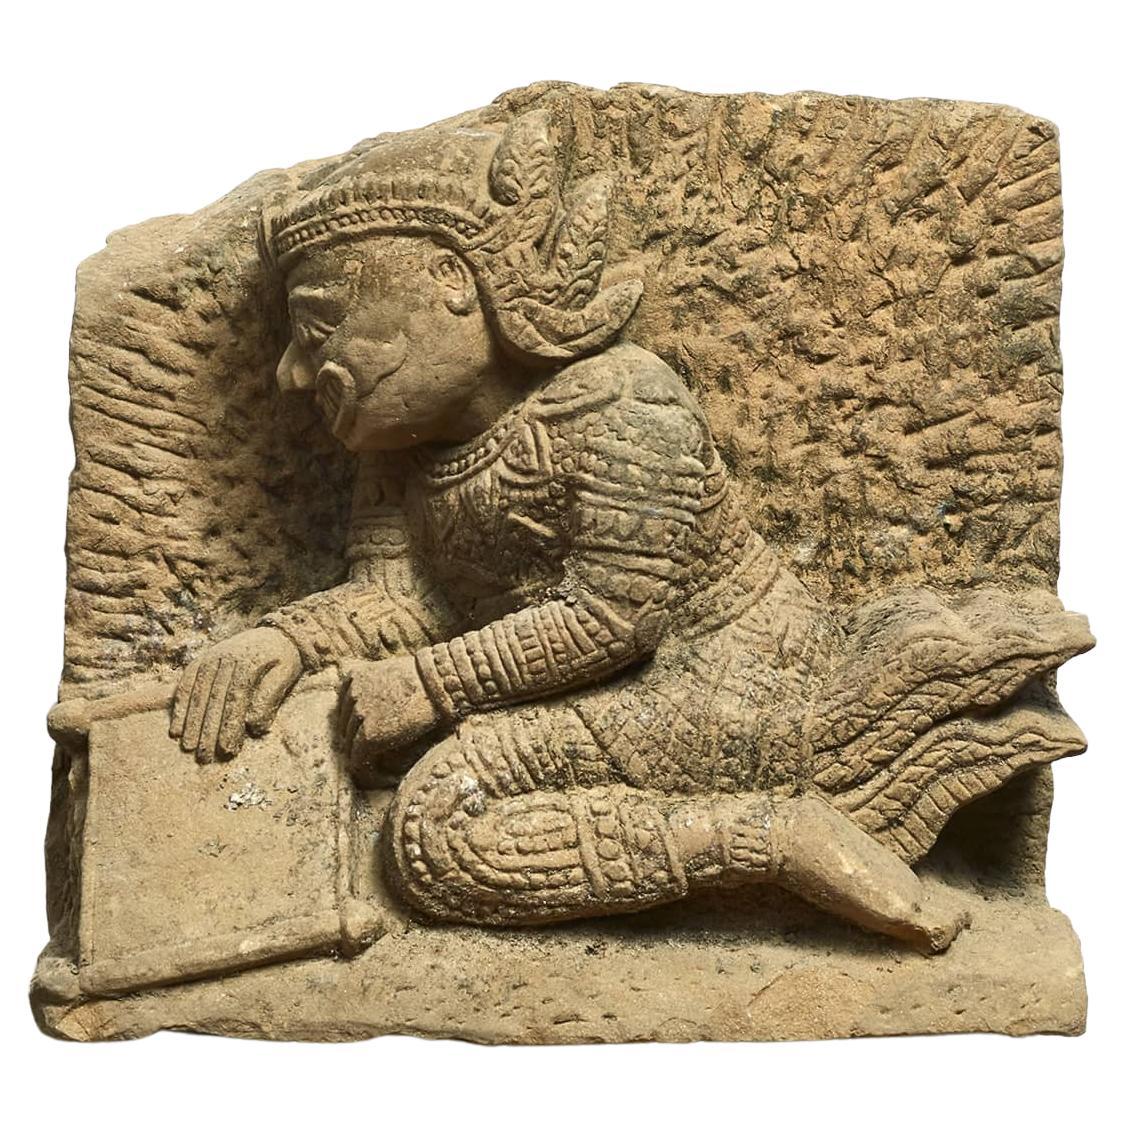 500-600 Jahre alte indische Affen-Göttin Hanuman in Sandstein geschnitzt